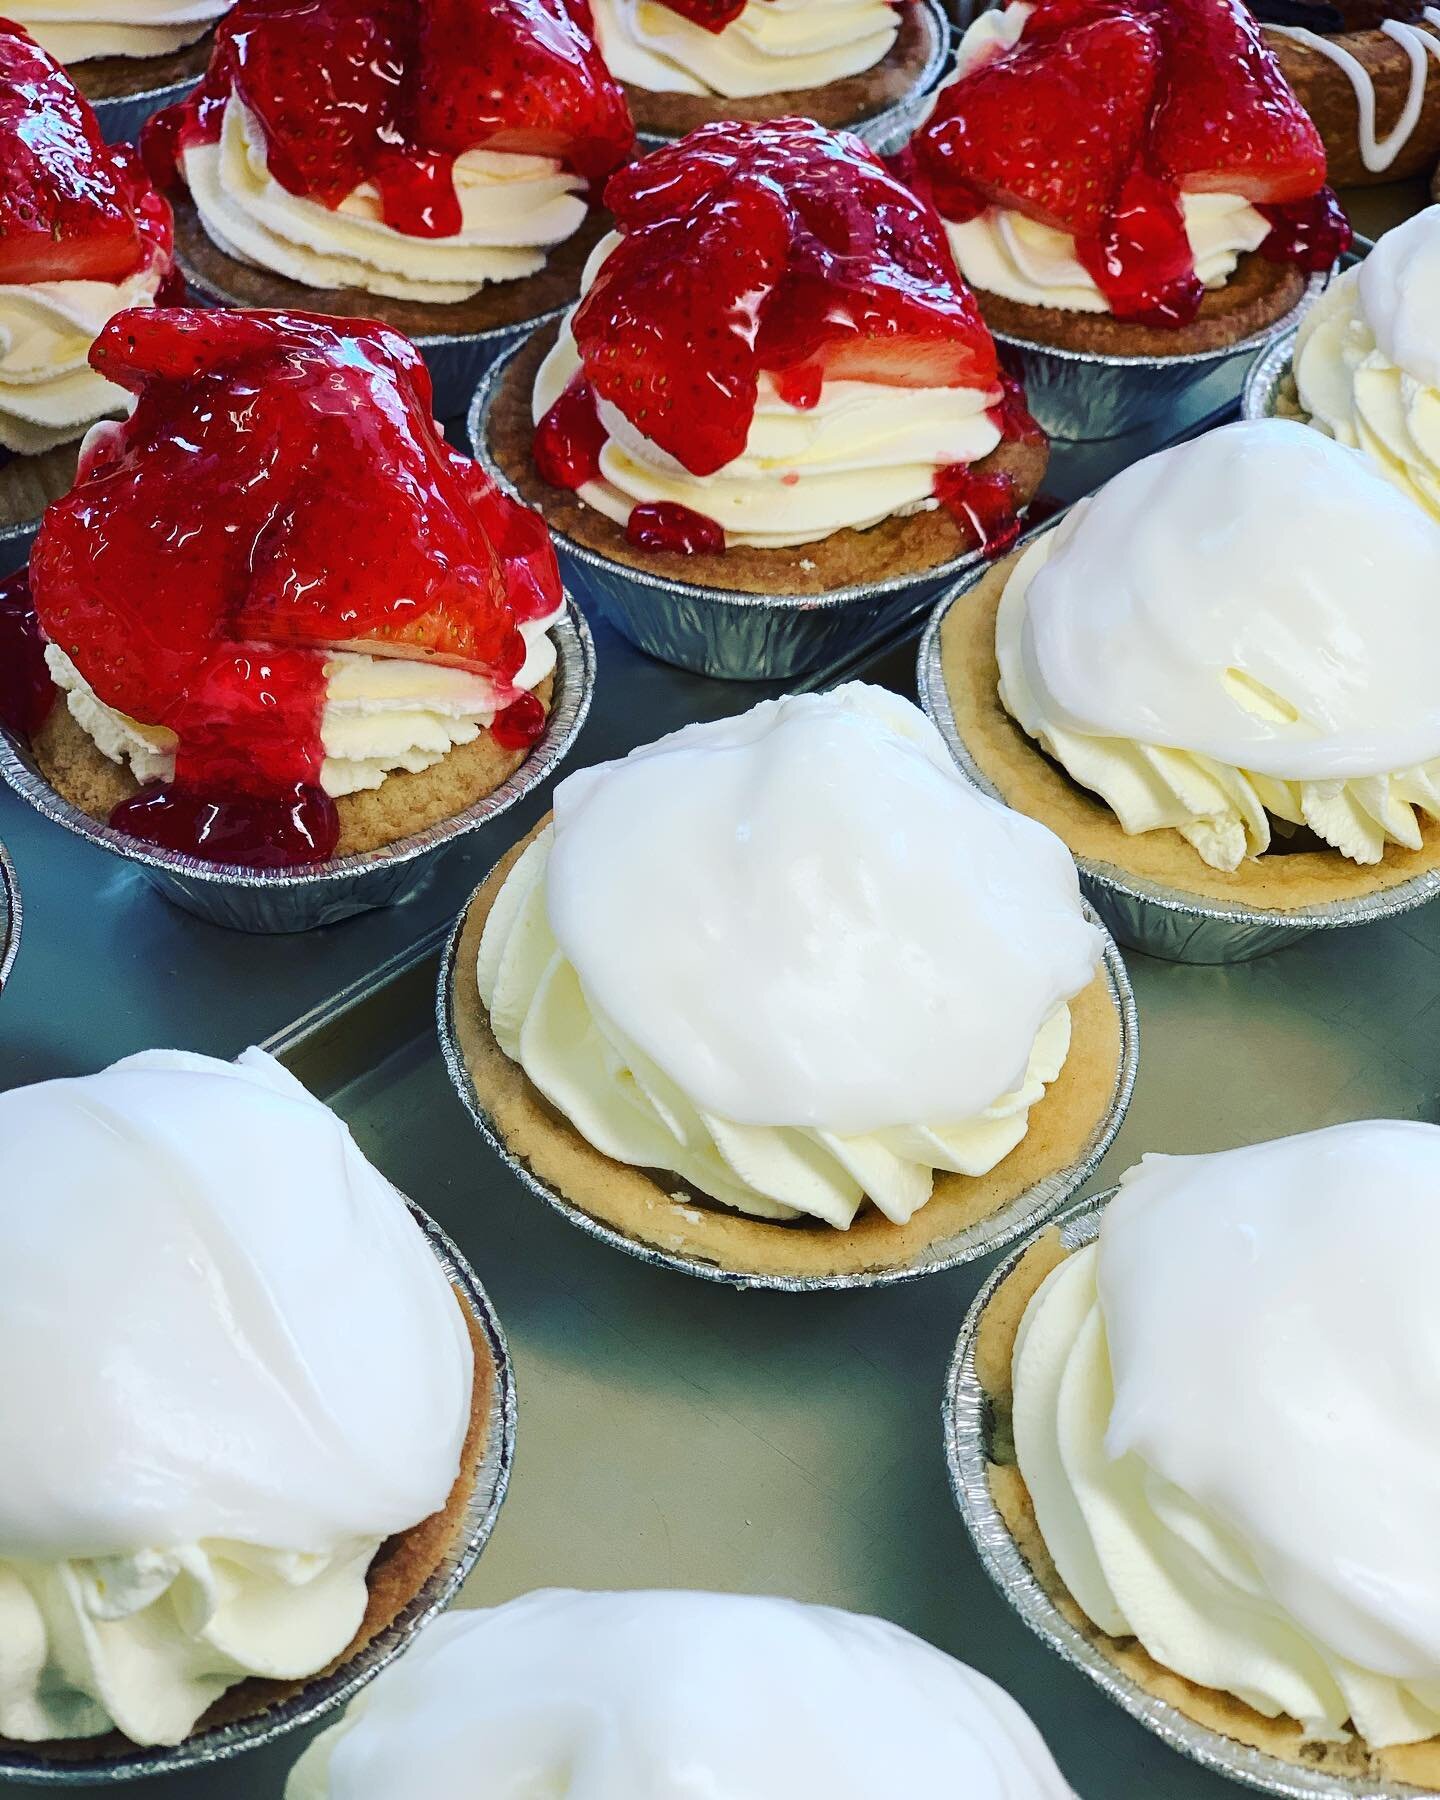 Strawberry or Lemon Tart? #freshcreamcake #bakersandmorebalfron